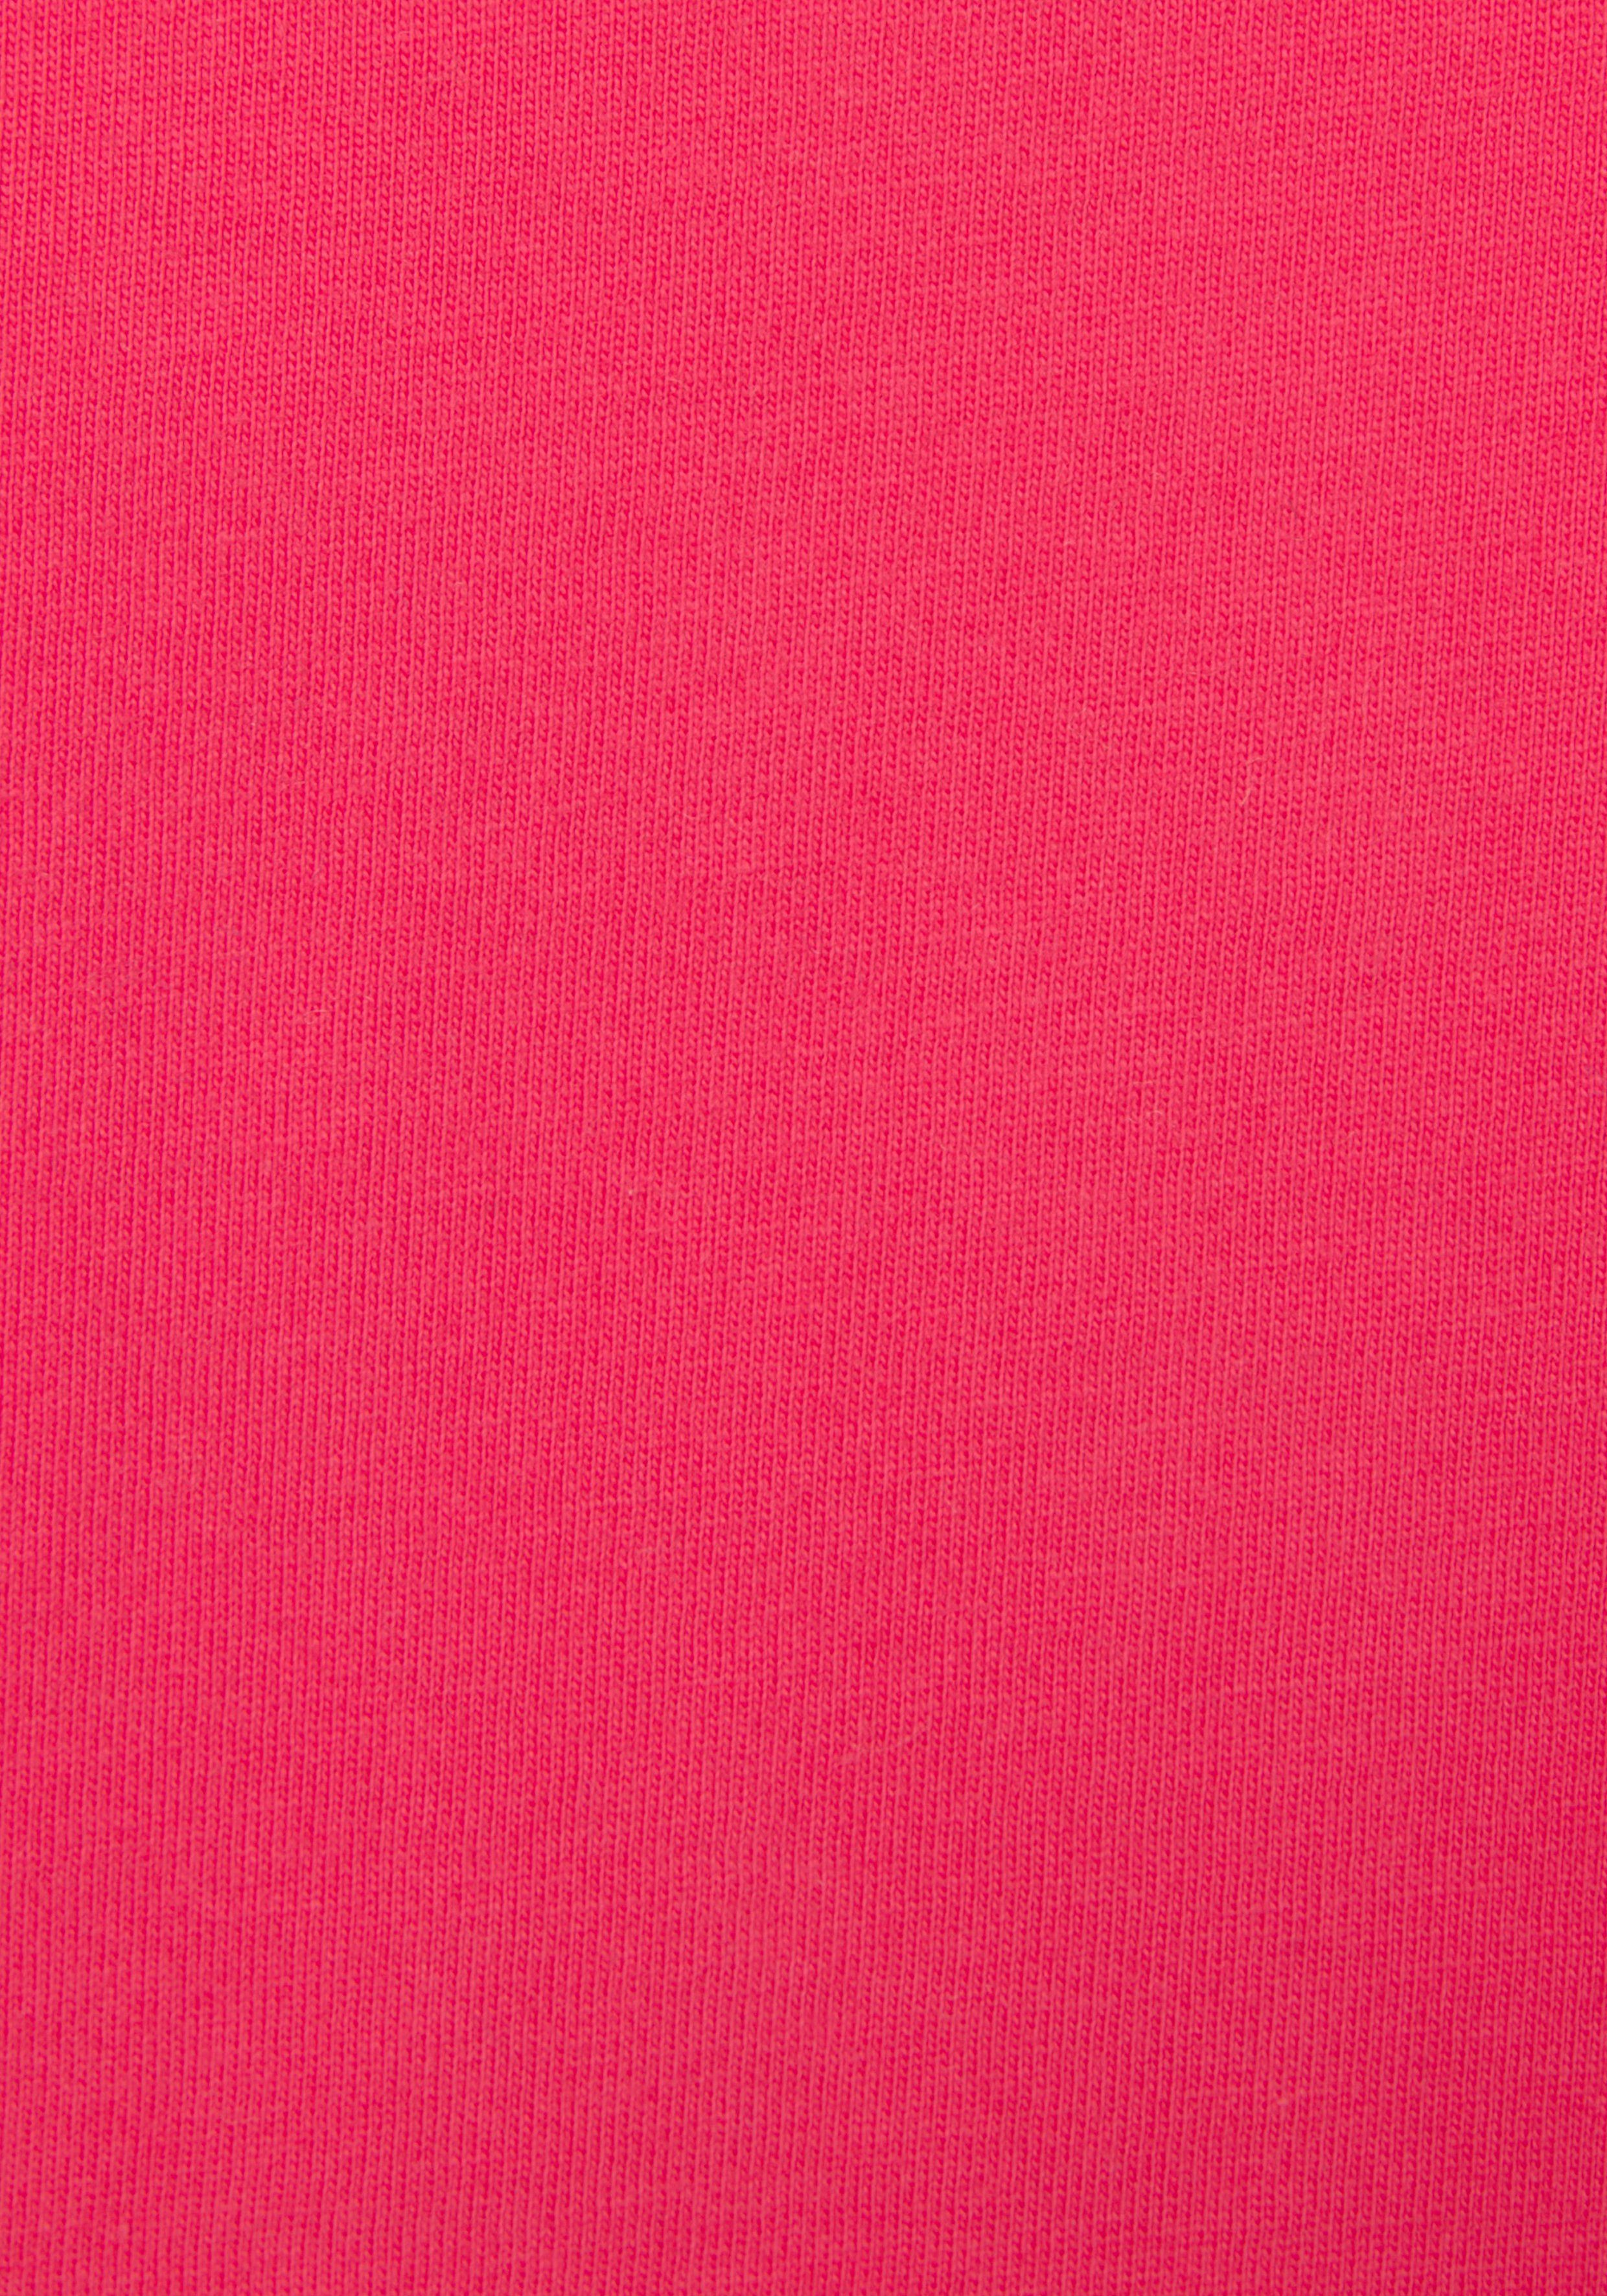 Loungewear -Kurzarmshirt, Bench. Logodruck, mit Loungeshirt T-Shirt glänzendem pink Loungewear